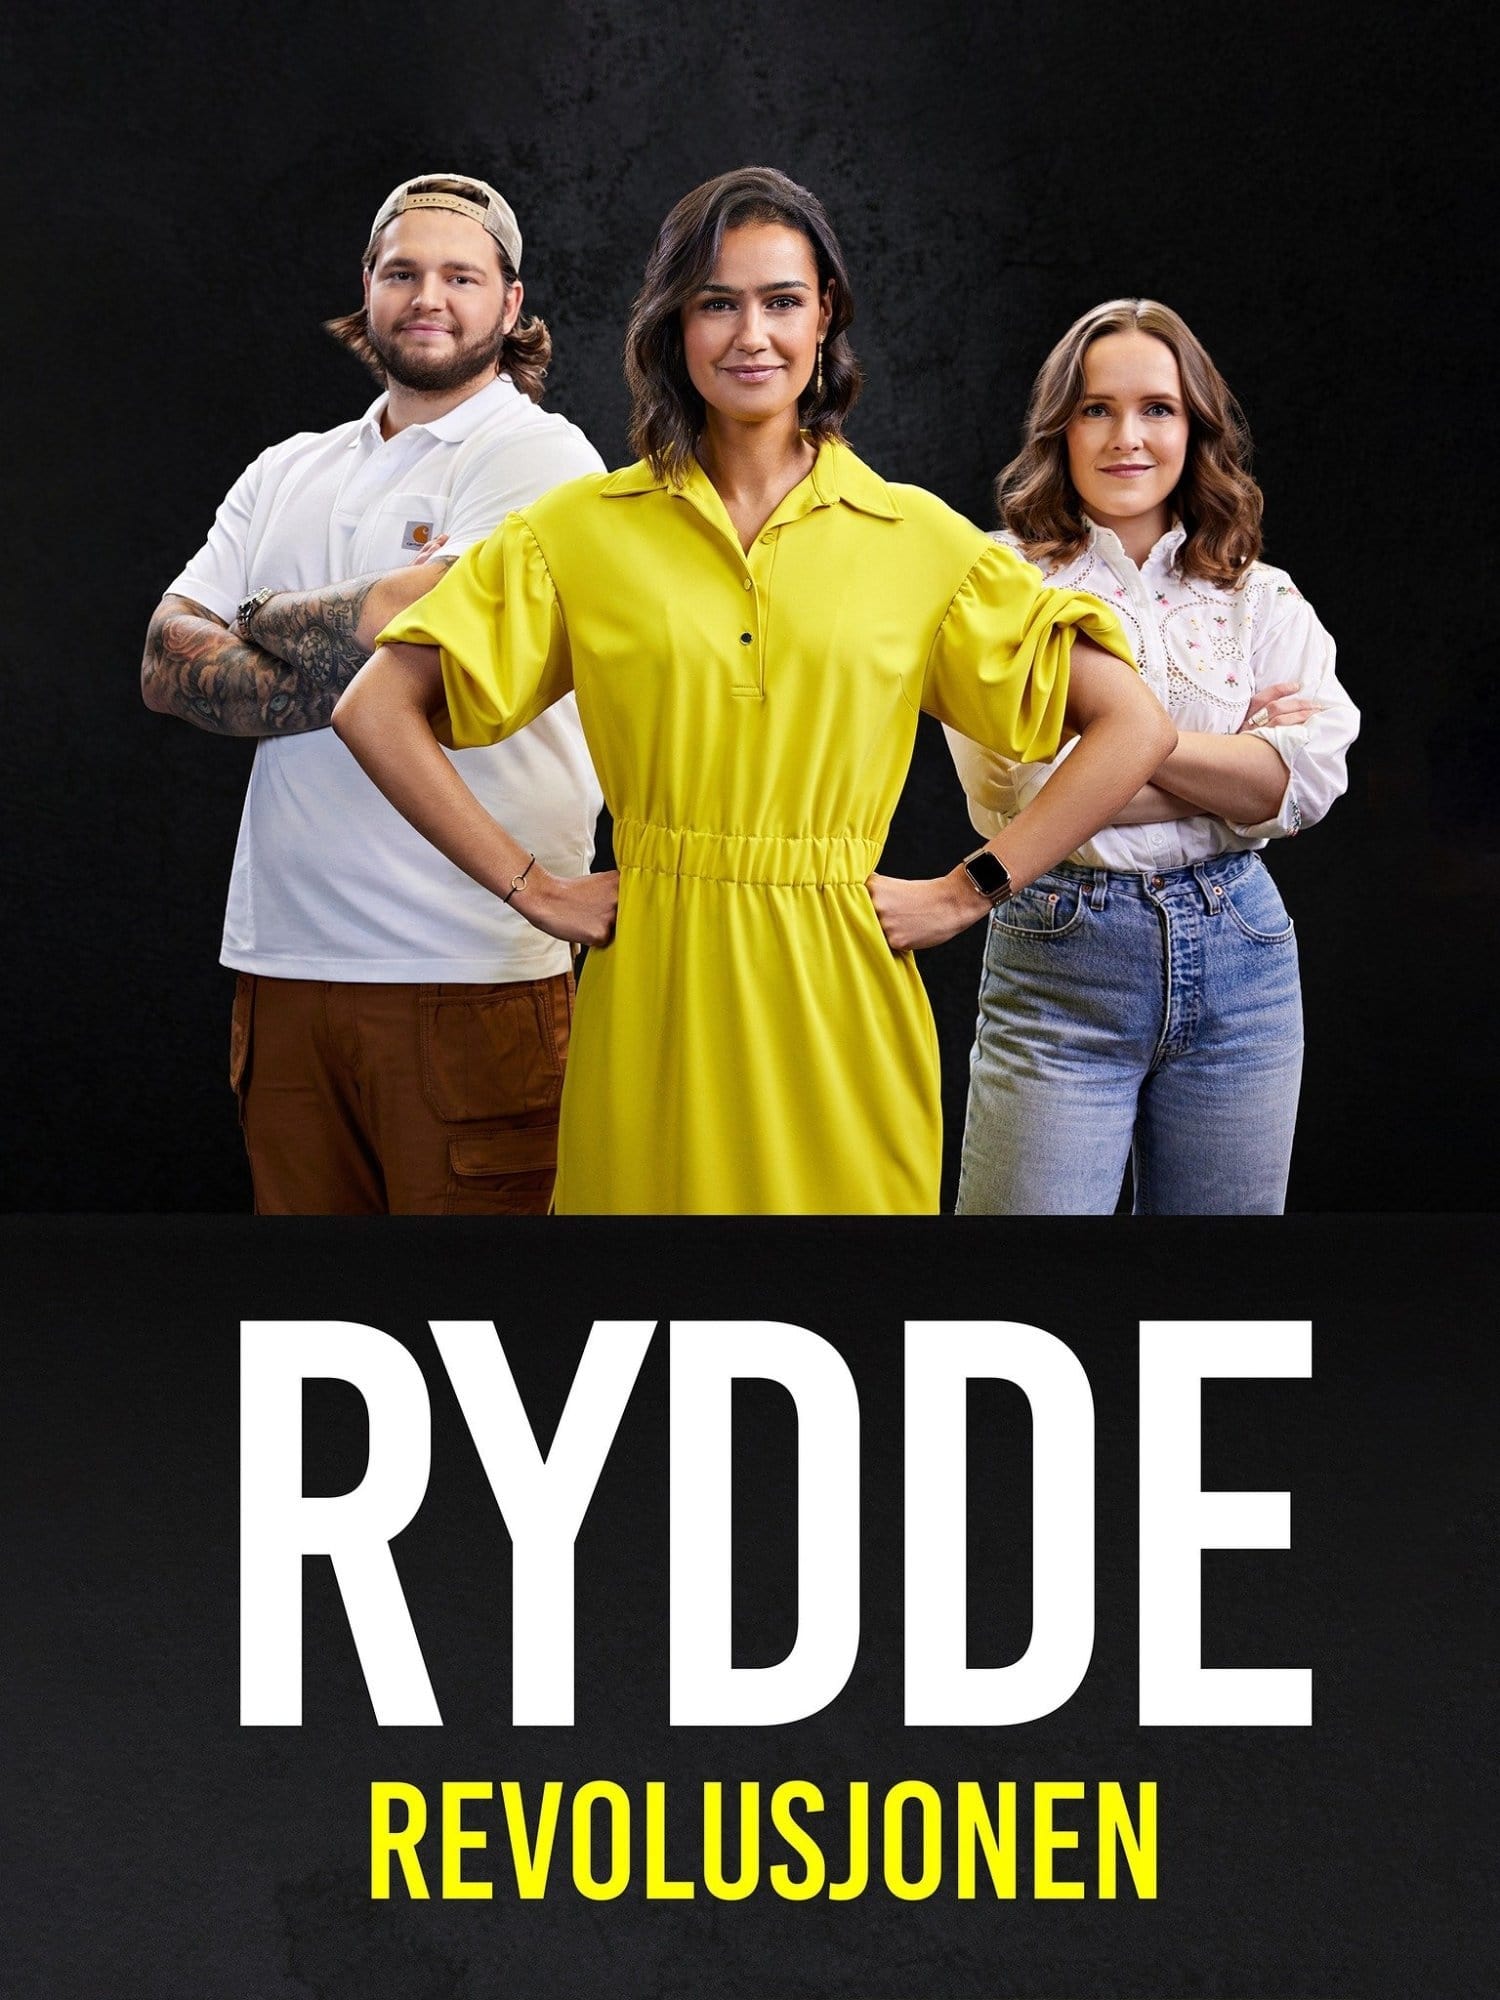 TV ratings for Rydderevolusjonen in Sweden. TV 2 Play TV series